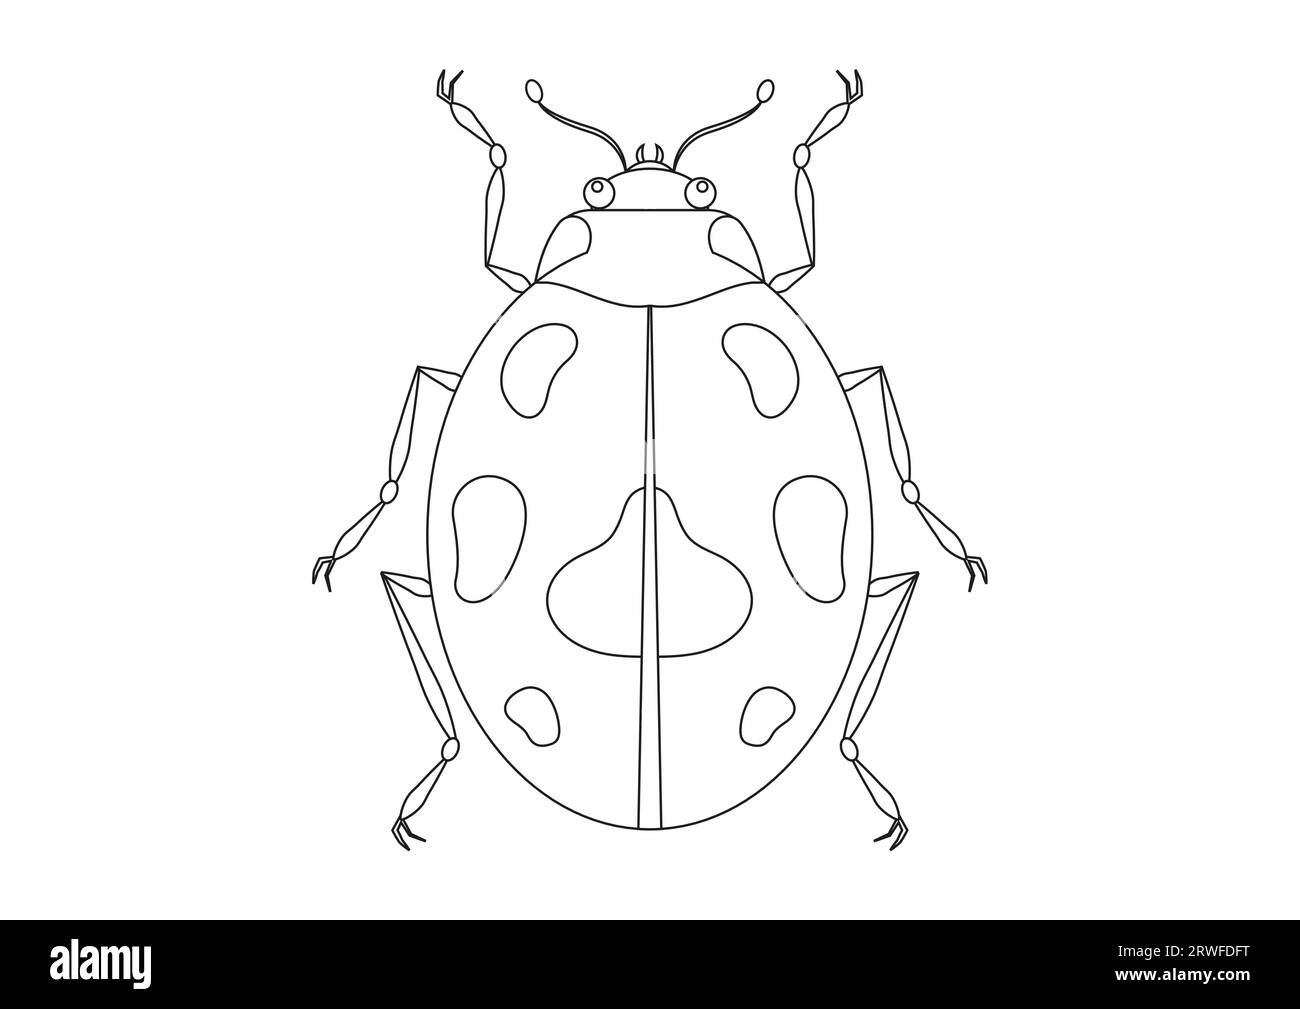 Schwarz-weiß-Käfer-Vektor Clipart. Malseite eines Käfers Stock Vektor